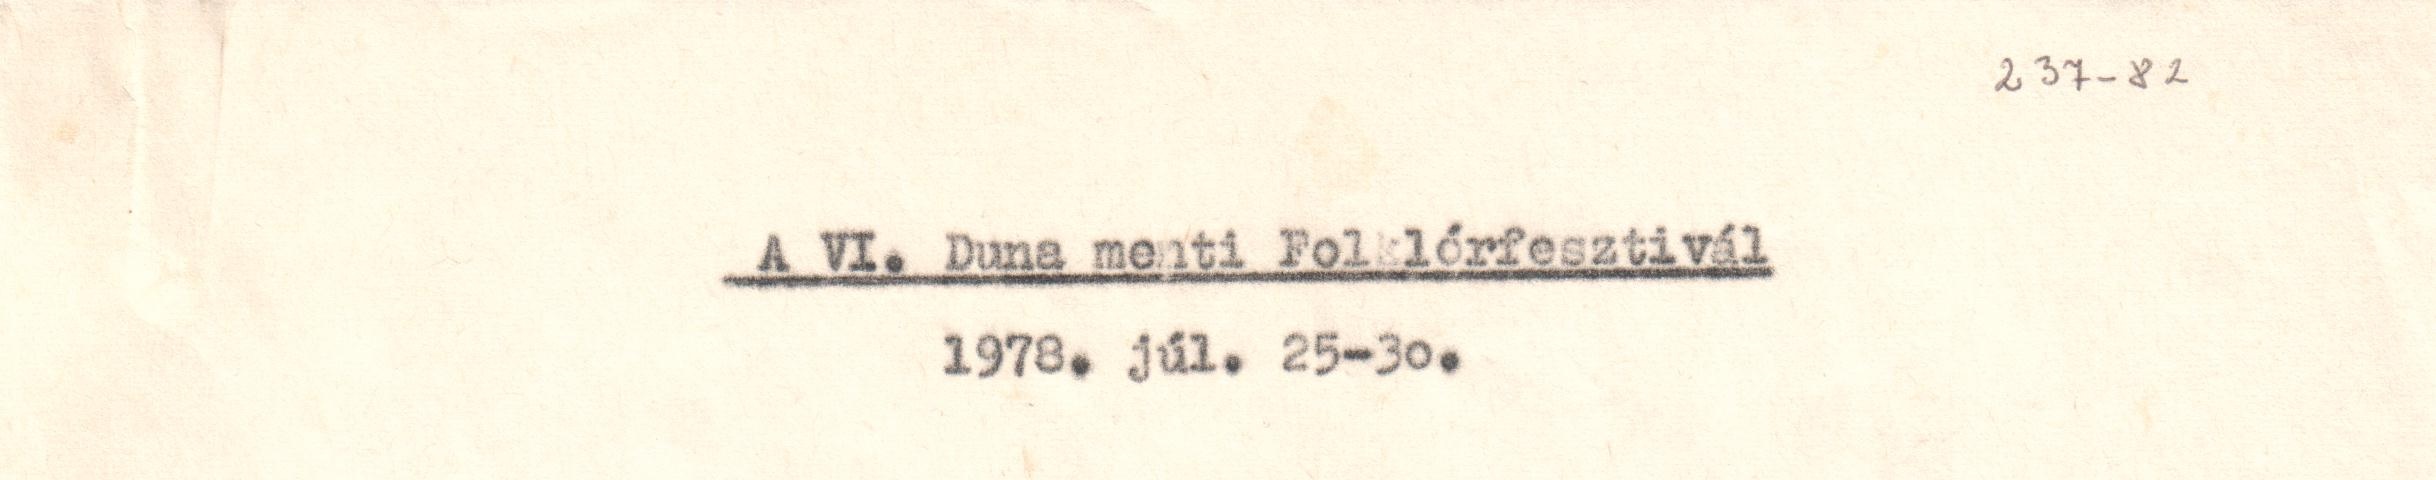 A VI. Dunamenti Folklórfesztivál 1978. július 25-30. Gépirat. (Viski Károly Múzeum Kalocsa RR-F)